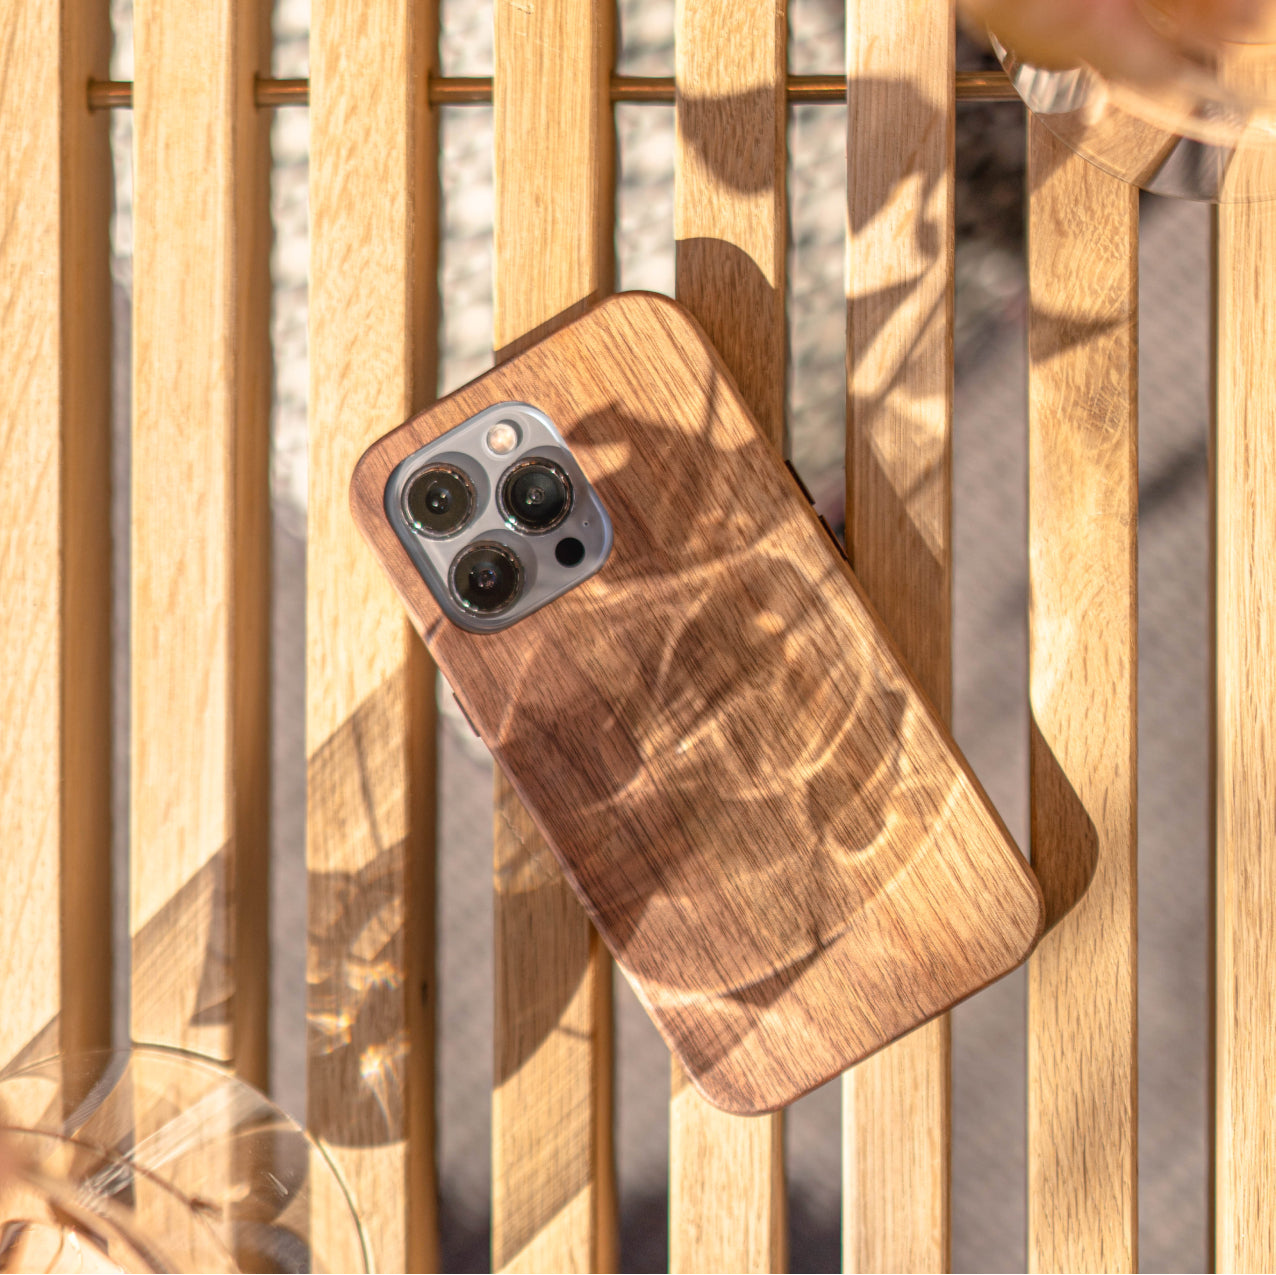 Wood Chicago Blackhawks iPhone 13 Pro Case - MagSafe® Compatible iPhone 13  Pro Cover - Custom Chicago Blackhawks Gift